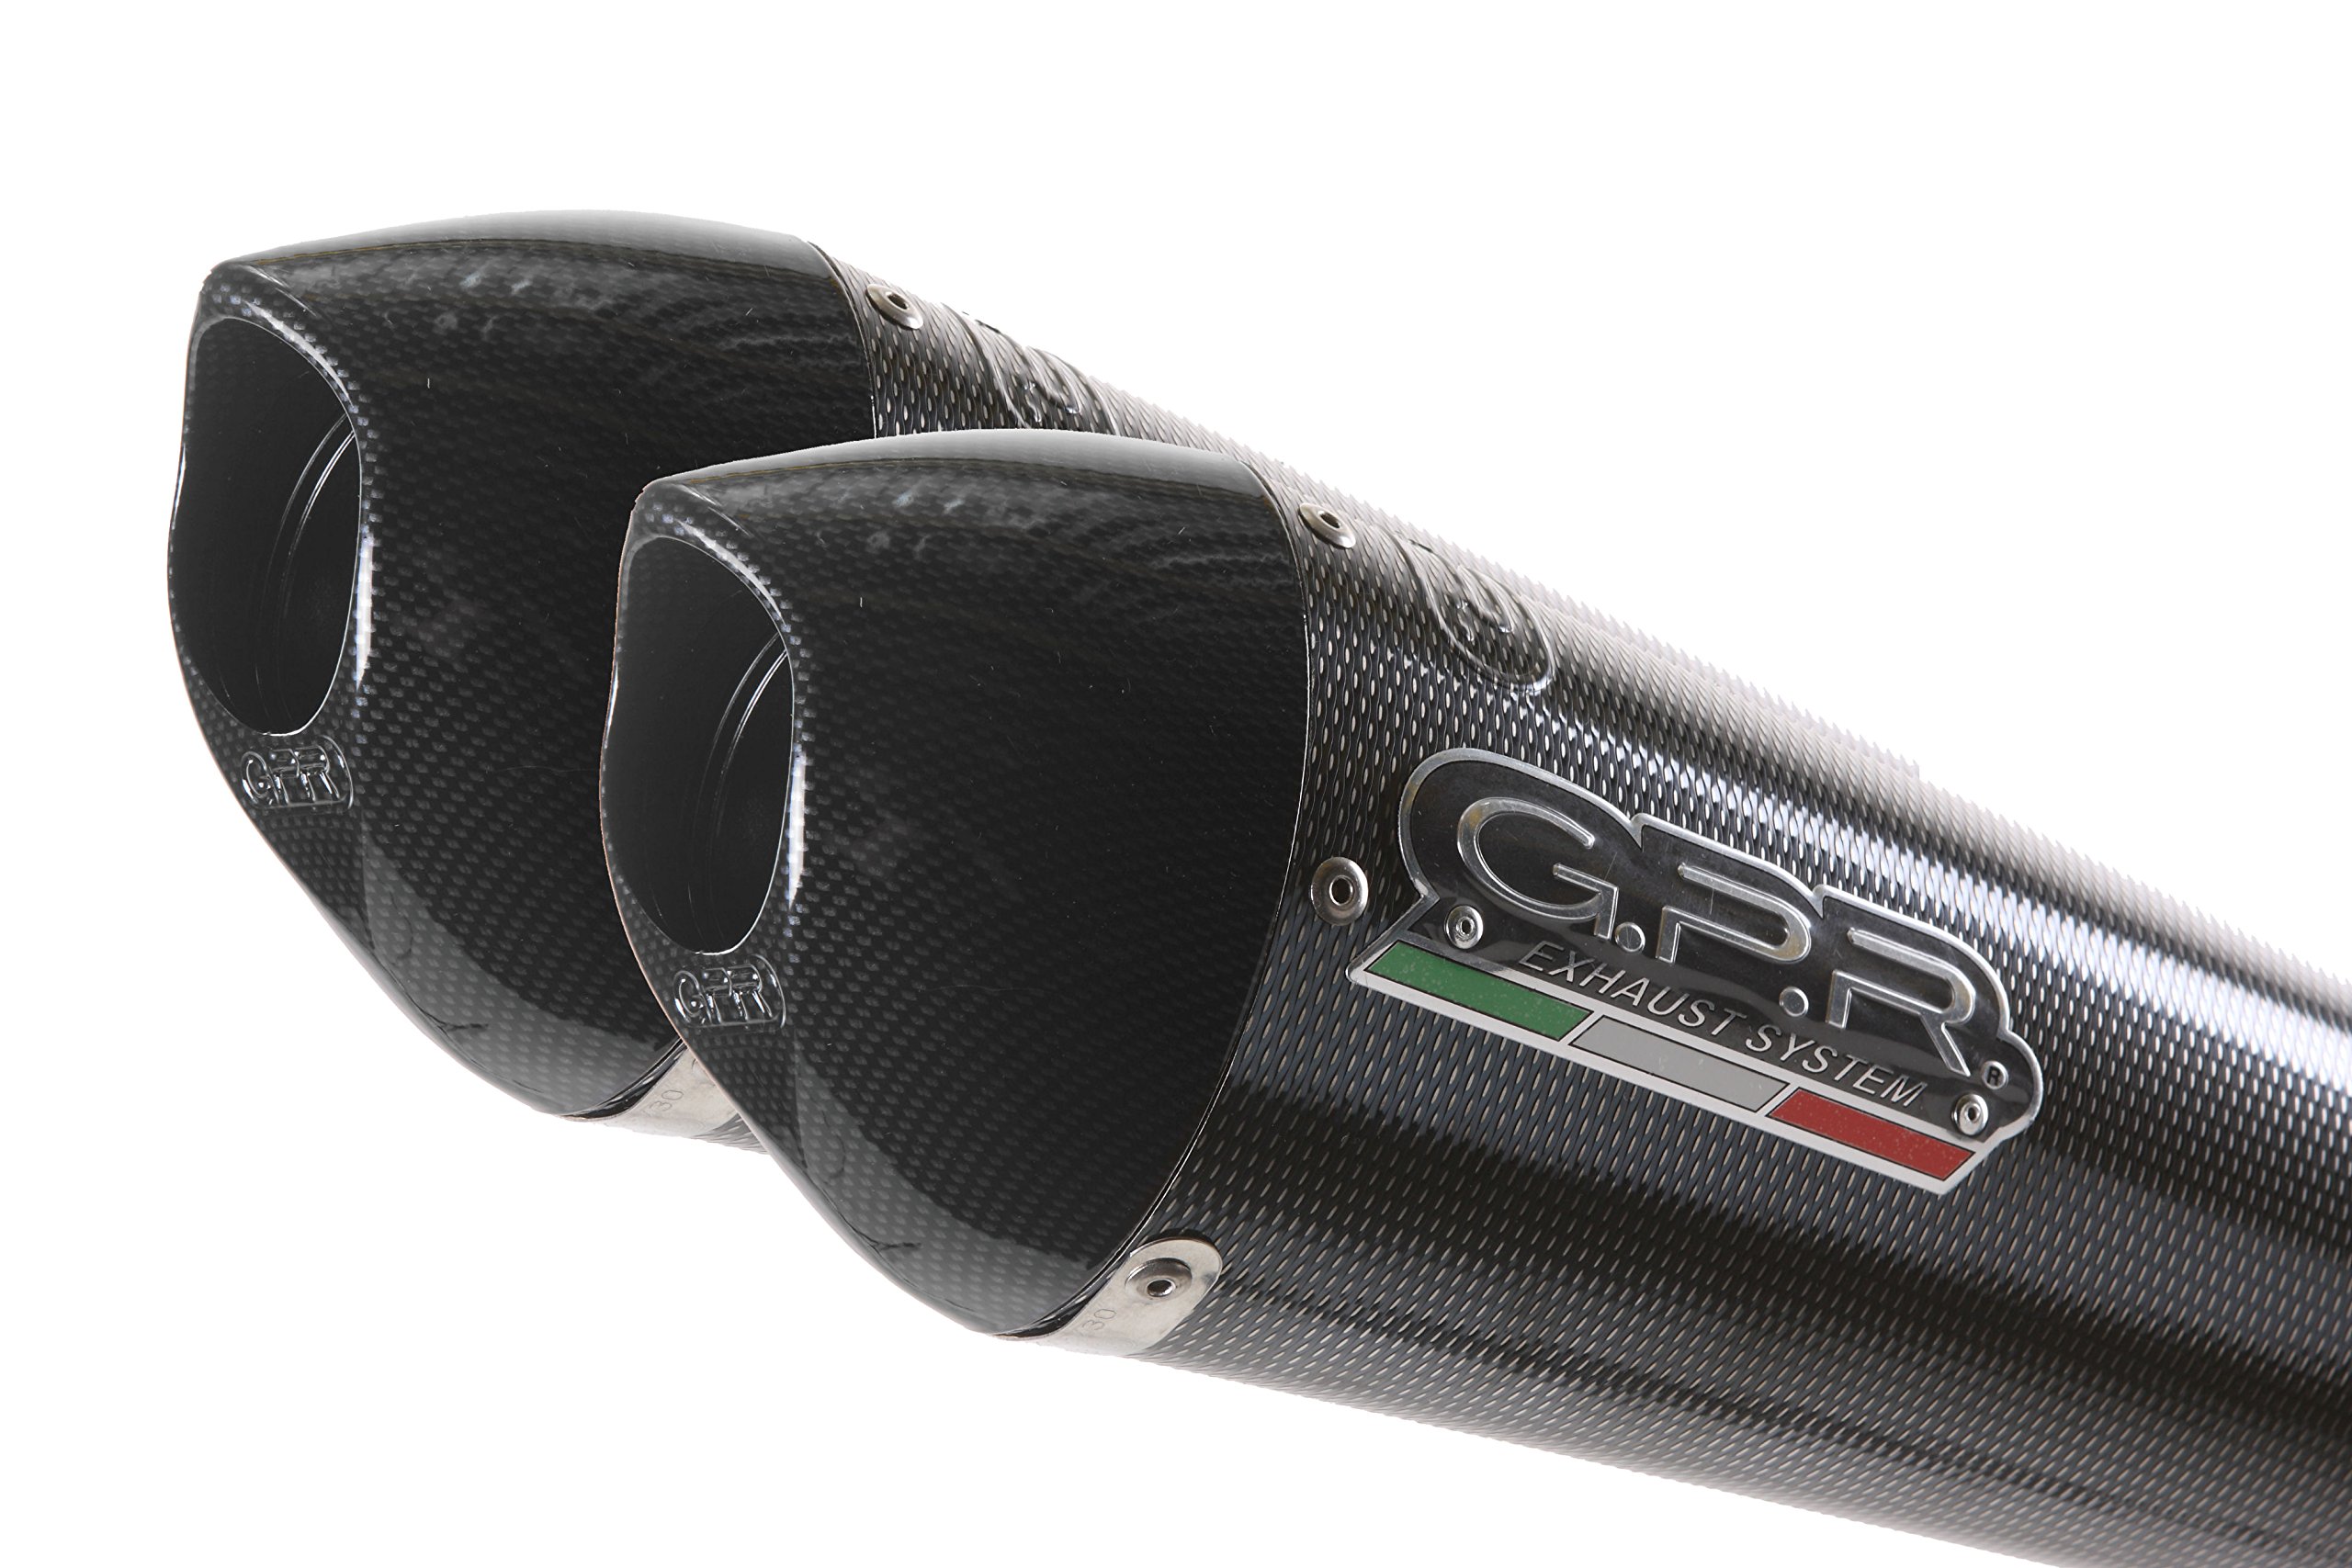 GPR Auspuff Endschalldämpfer – Honda MSX – Grom 125 2013/14 HOMOLOGATED Full Exhaust System with Catalyst by GPR Exhaust Systems der EVO Poppy Line